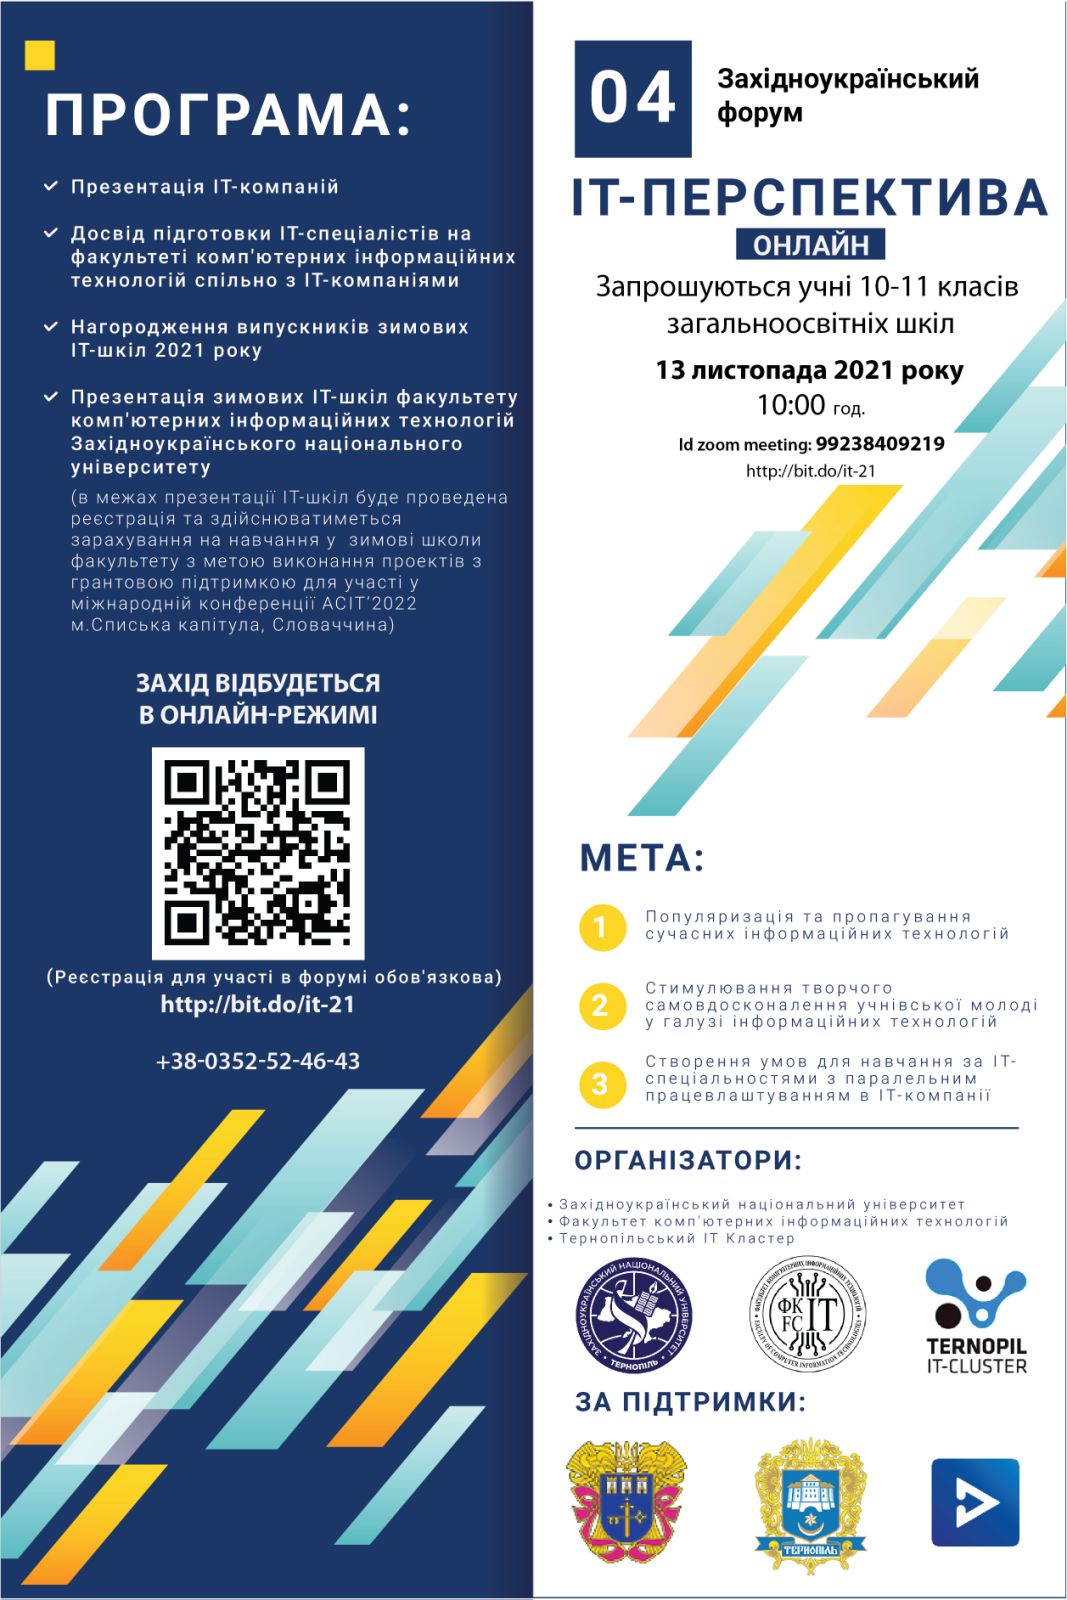 Запрошуємо учнівську молодь взяти участь у IV Західноукраїнському форумі «ІТ-перспектива» (онлайн)